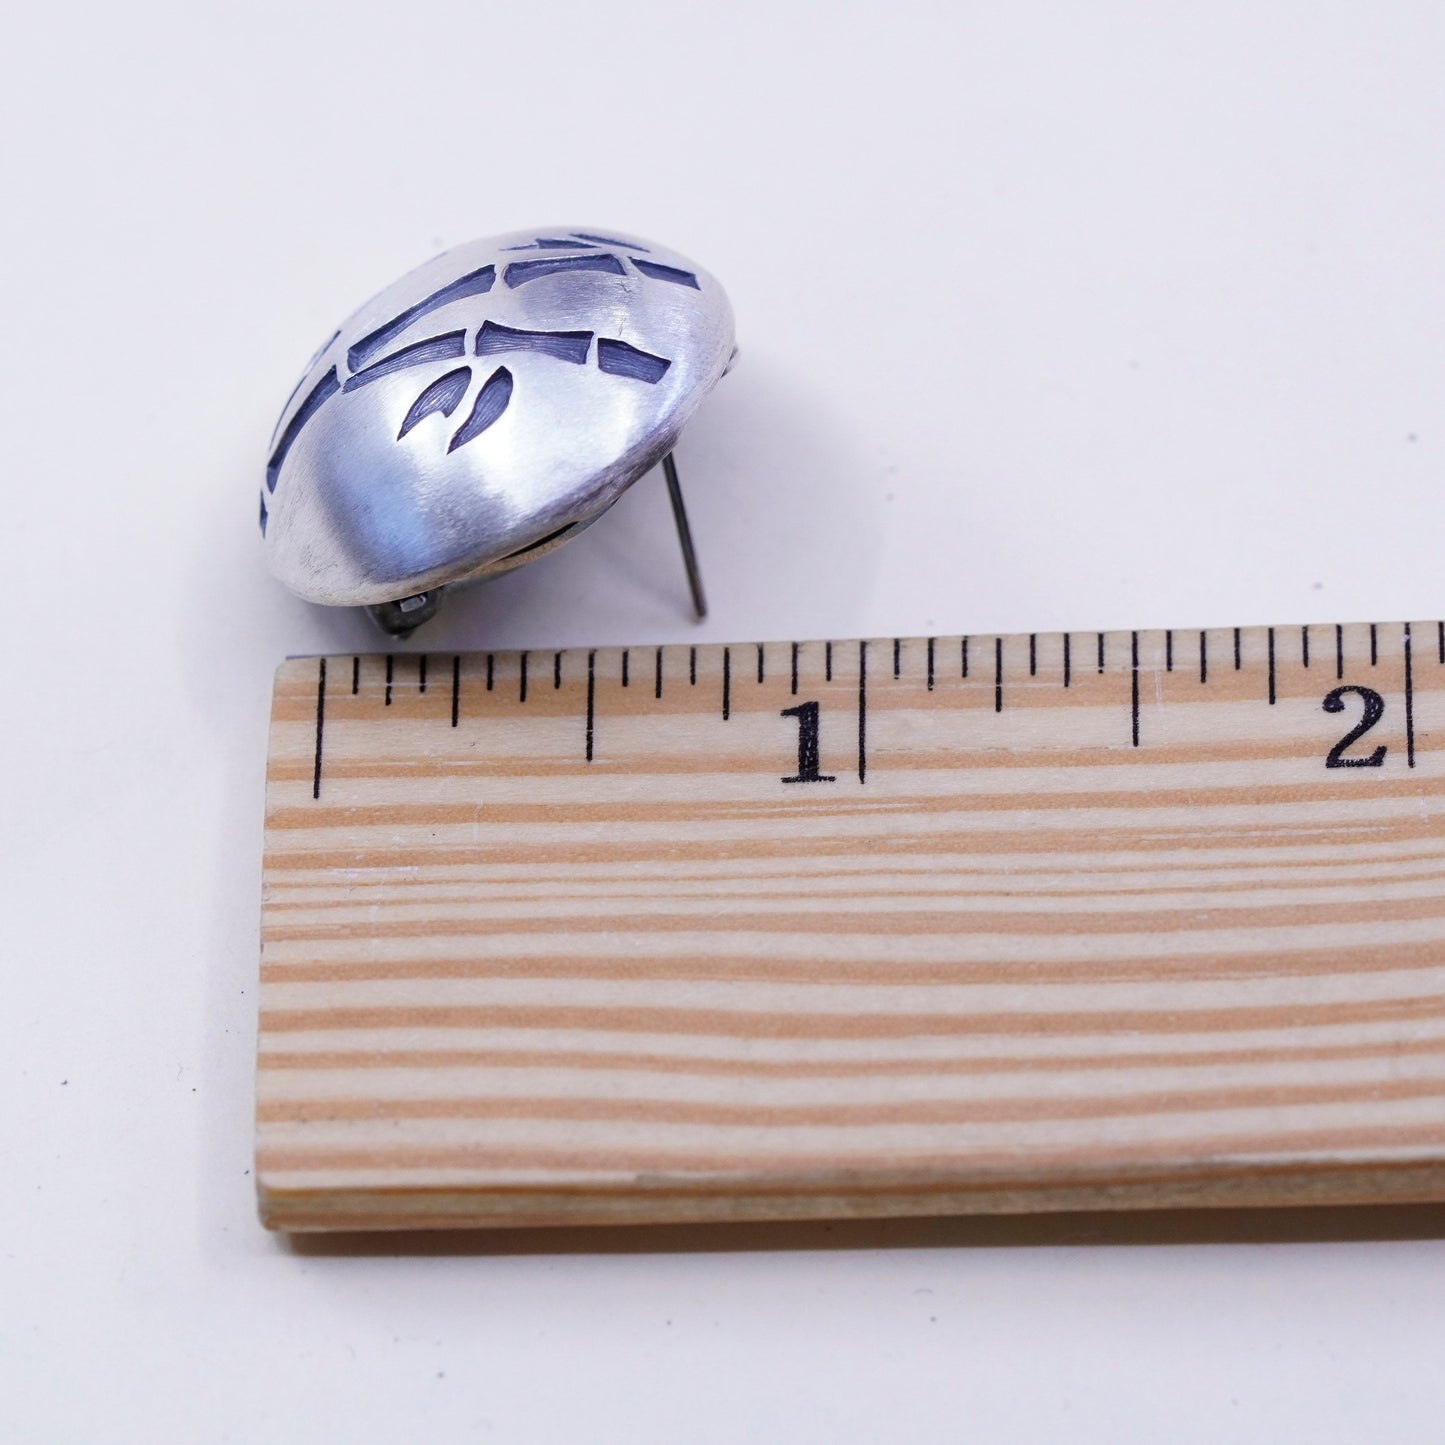 Designer modern Sterling silver handmade earrings, Matt 925 round studs bamboo